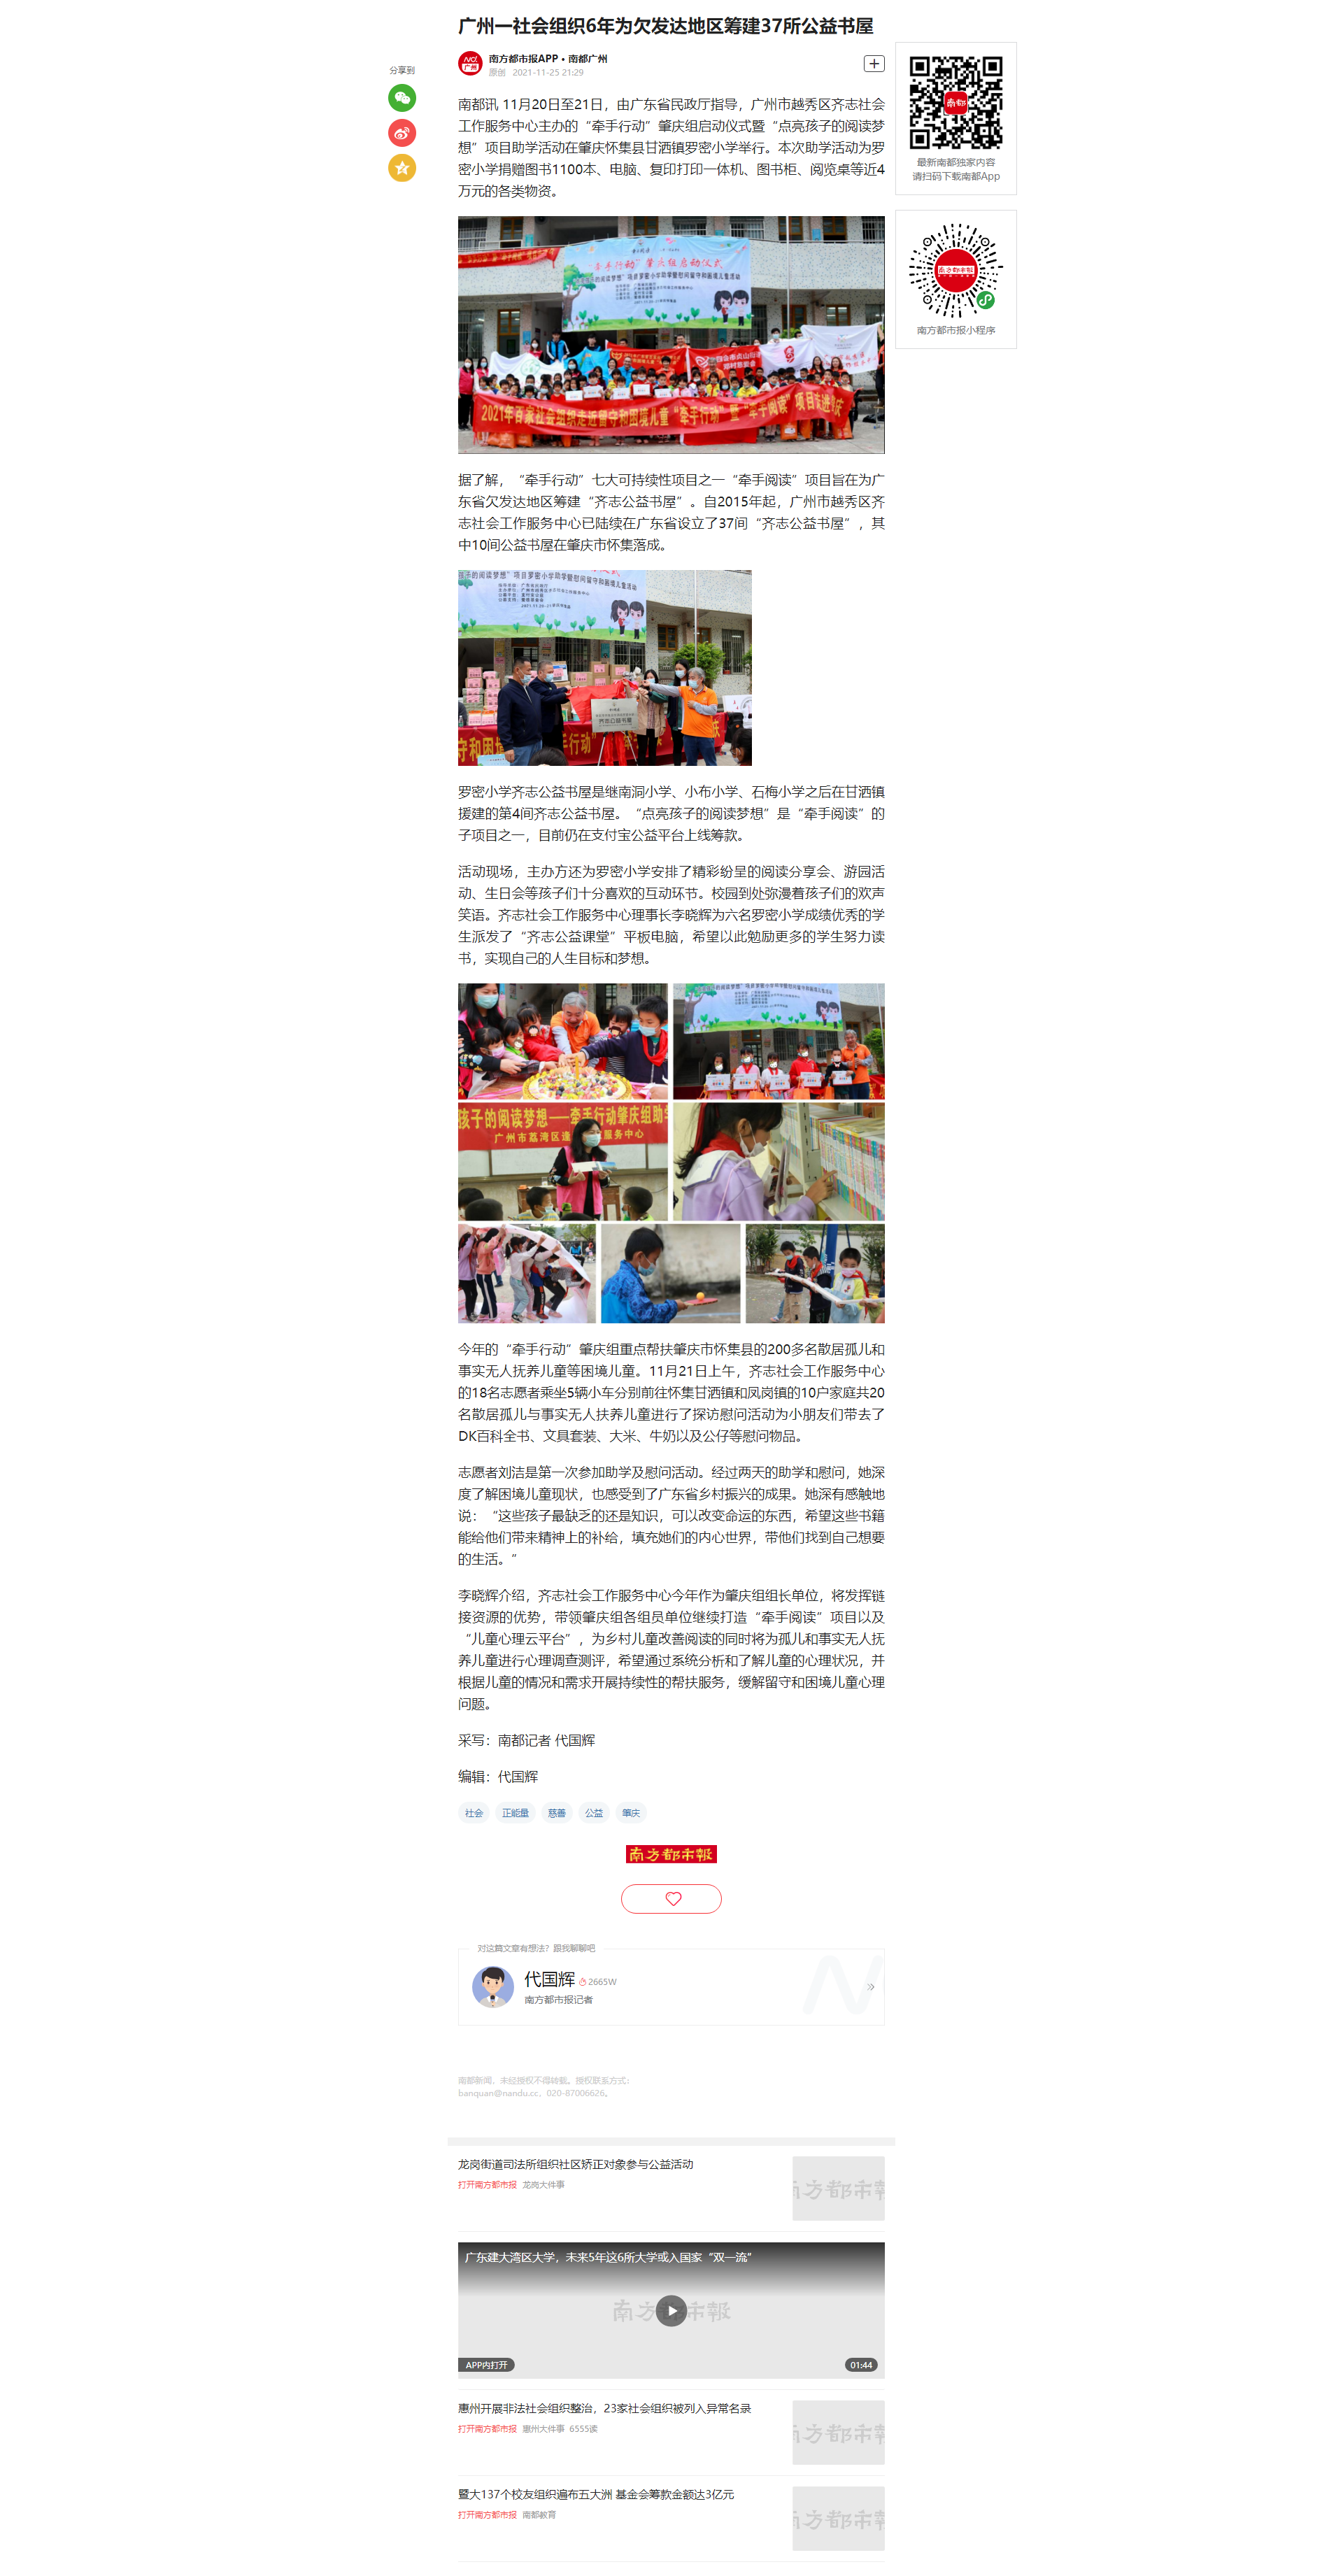 【南方都市报】广州一社会组织6年为欠发达地区筹建37所公益书屋.png